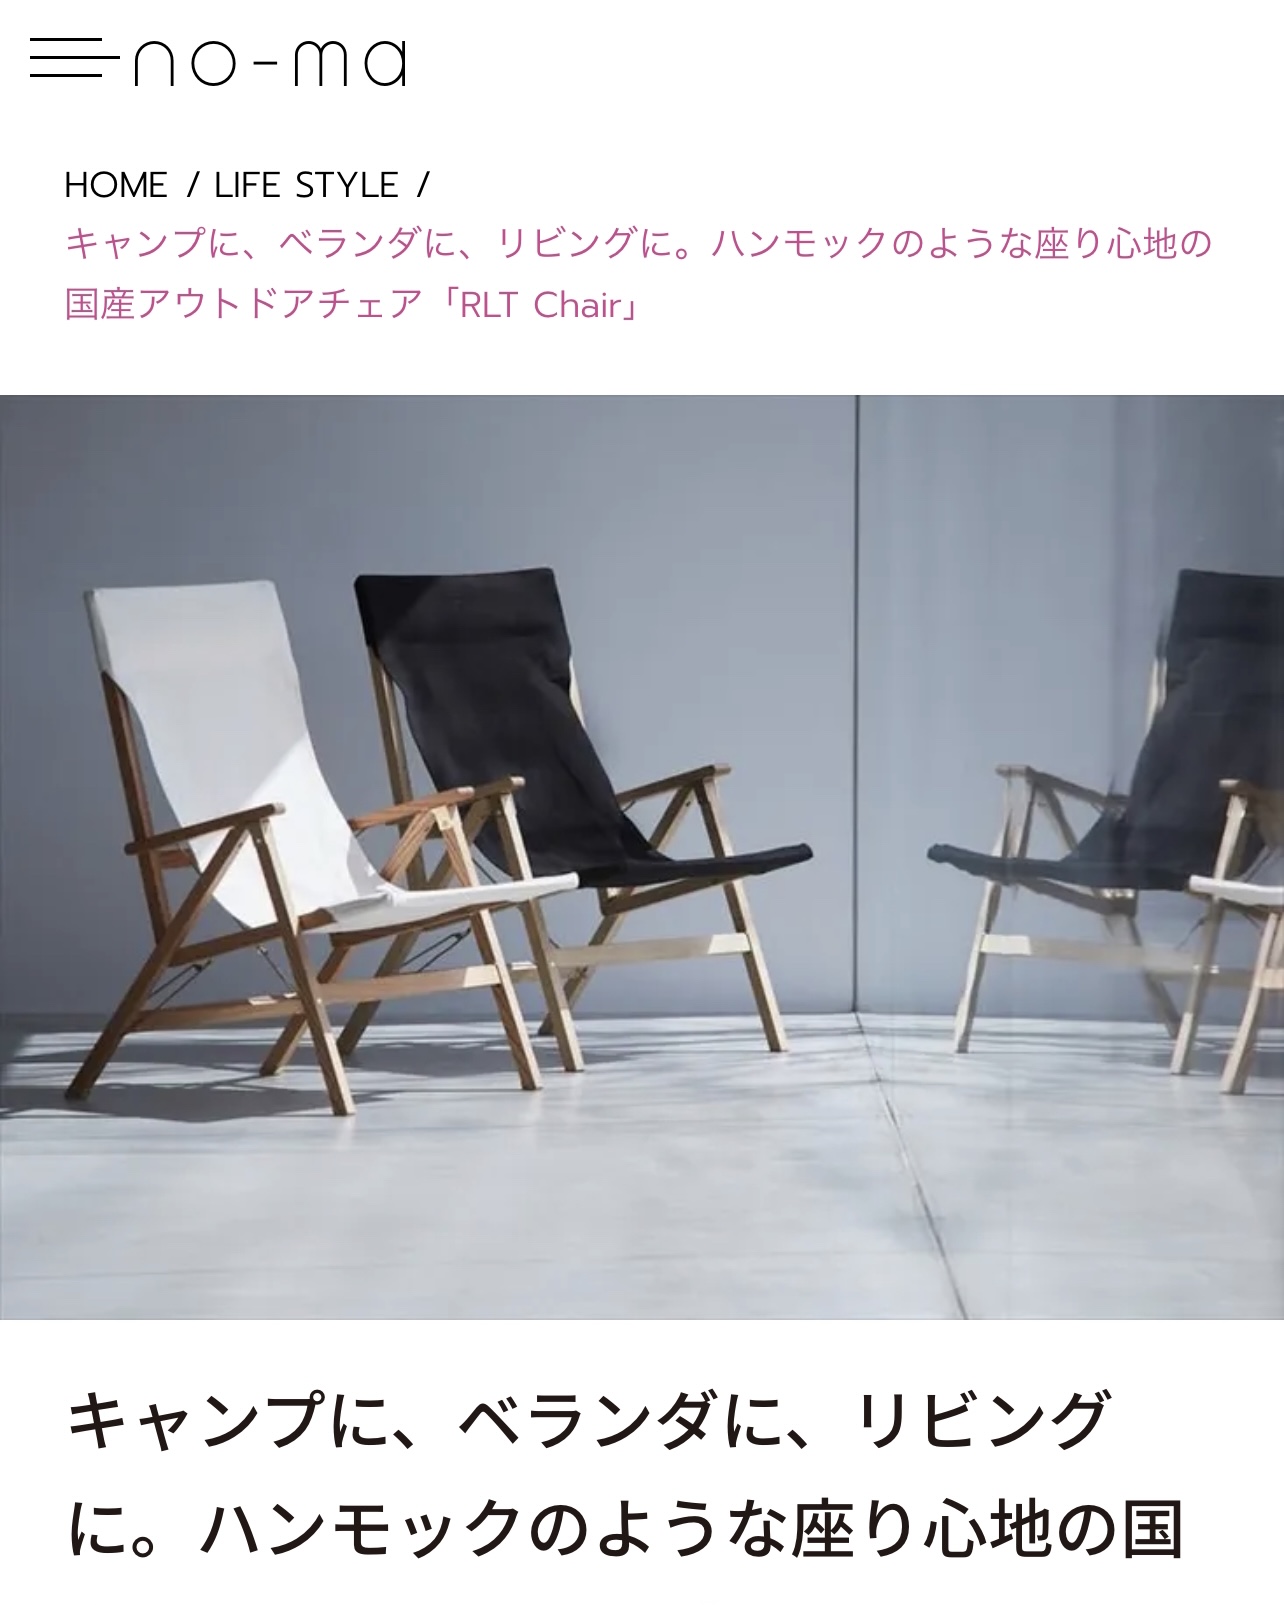 2022年5月25日(水) 【RLT Chair】no-maにてご紹介いただきました。